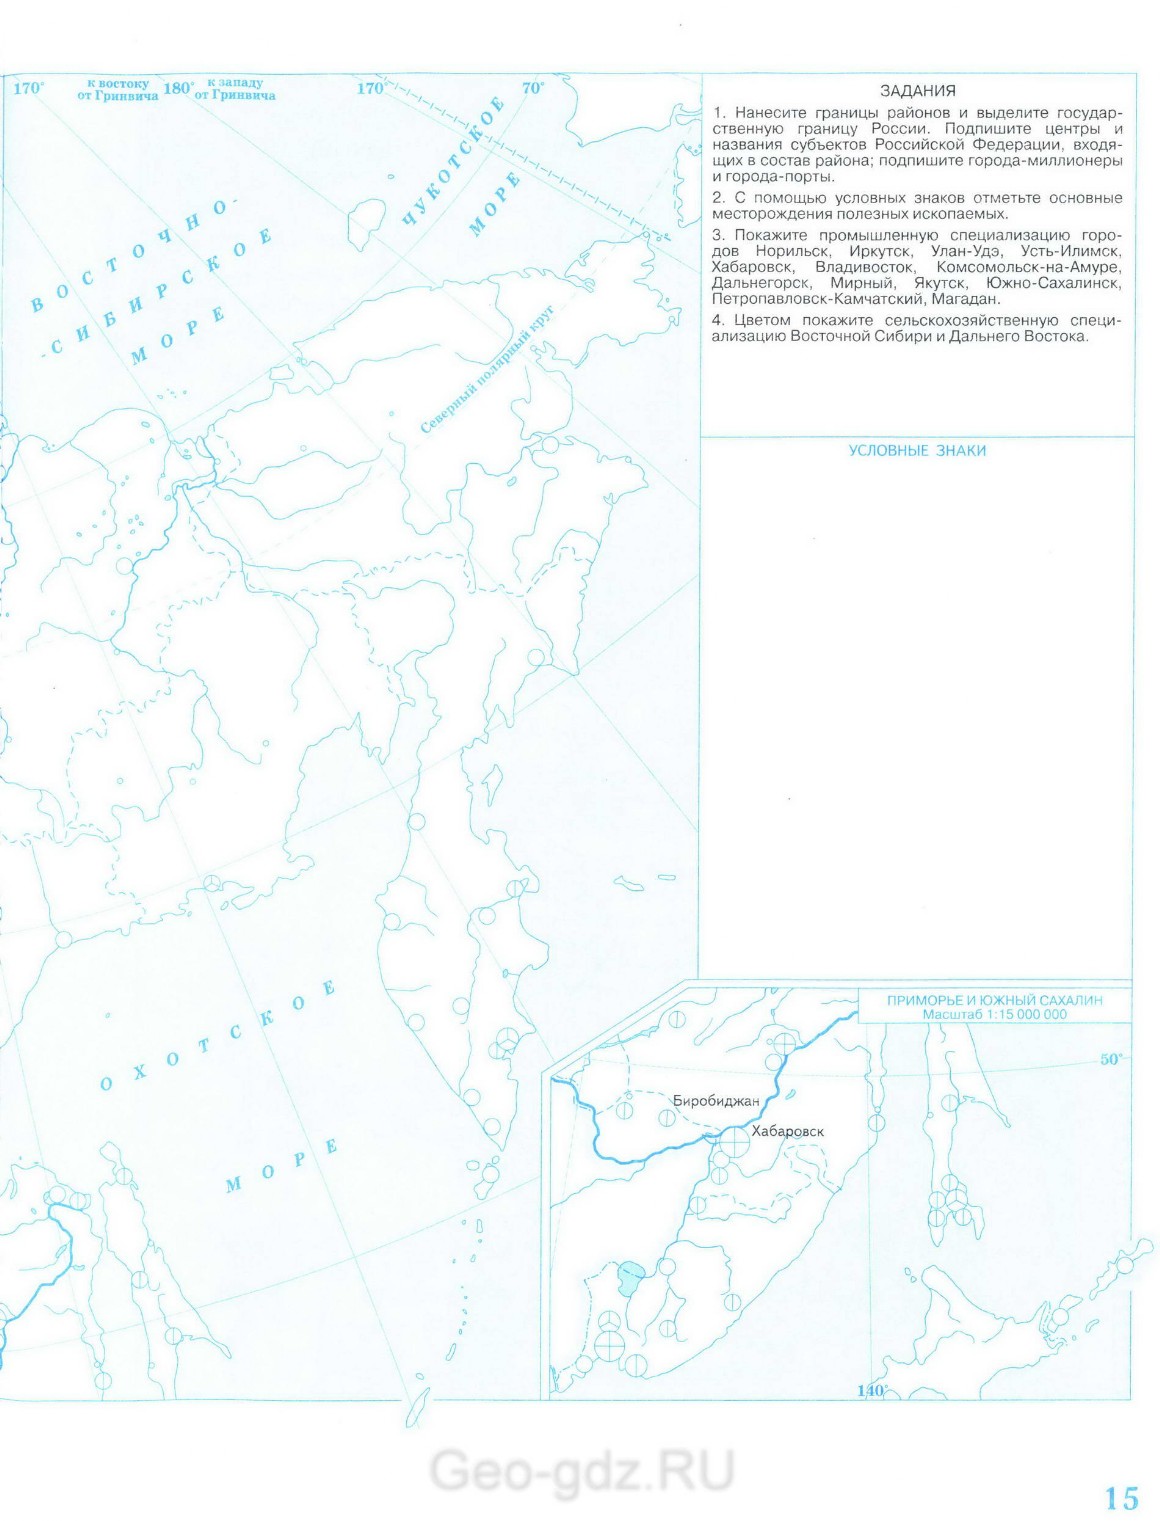 Контурная карта Восточная Сибирь и Дальний Восток - география 9 класс,скачать и распечатать - Решебник